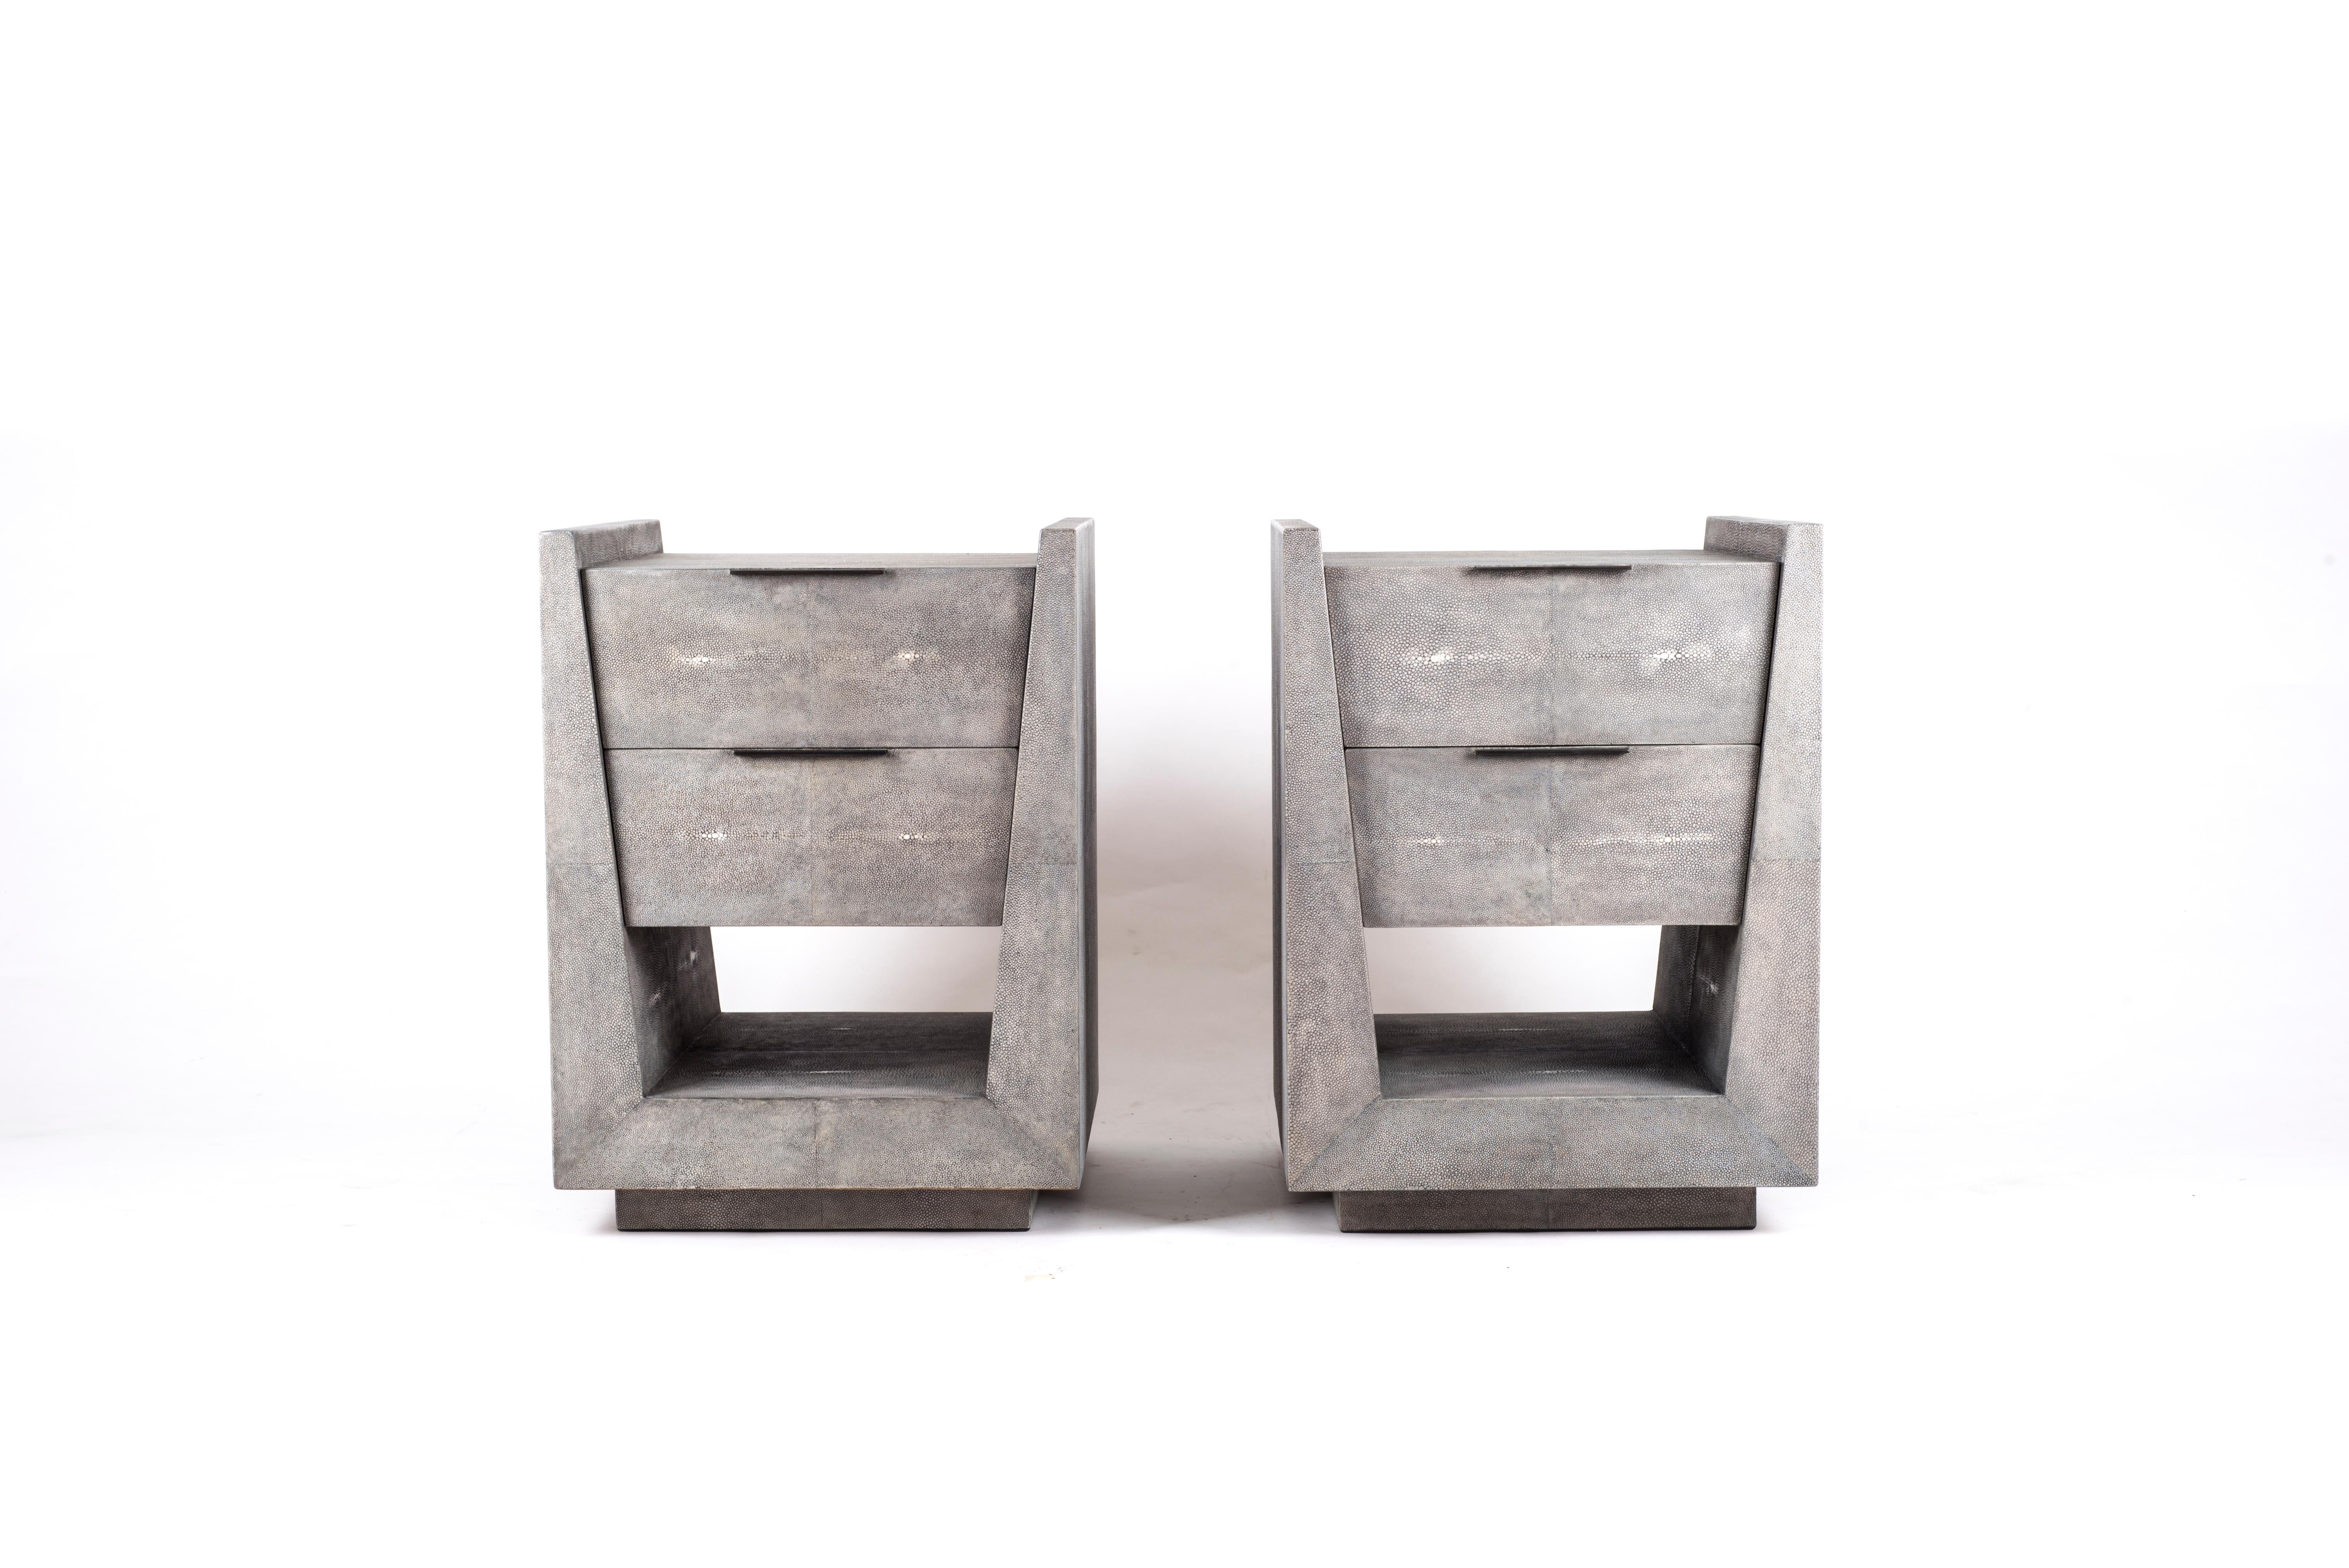 Le chevet Lola de R&Y Augousti est une pièce élégante avec sa géométrie subtile. Cette table de chevet est entièrement marquetée en galuchat gris avec de discrètes poignées plates en laiton bronze-patiné pour les tiroirs. Les tiroirs sont marquetés